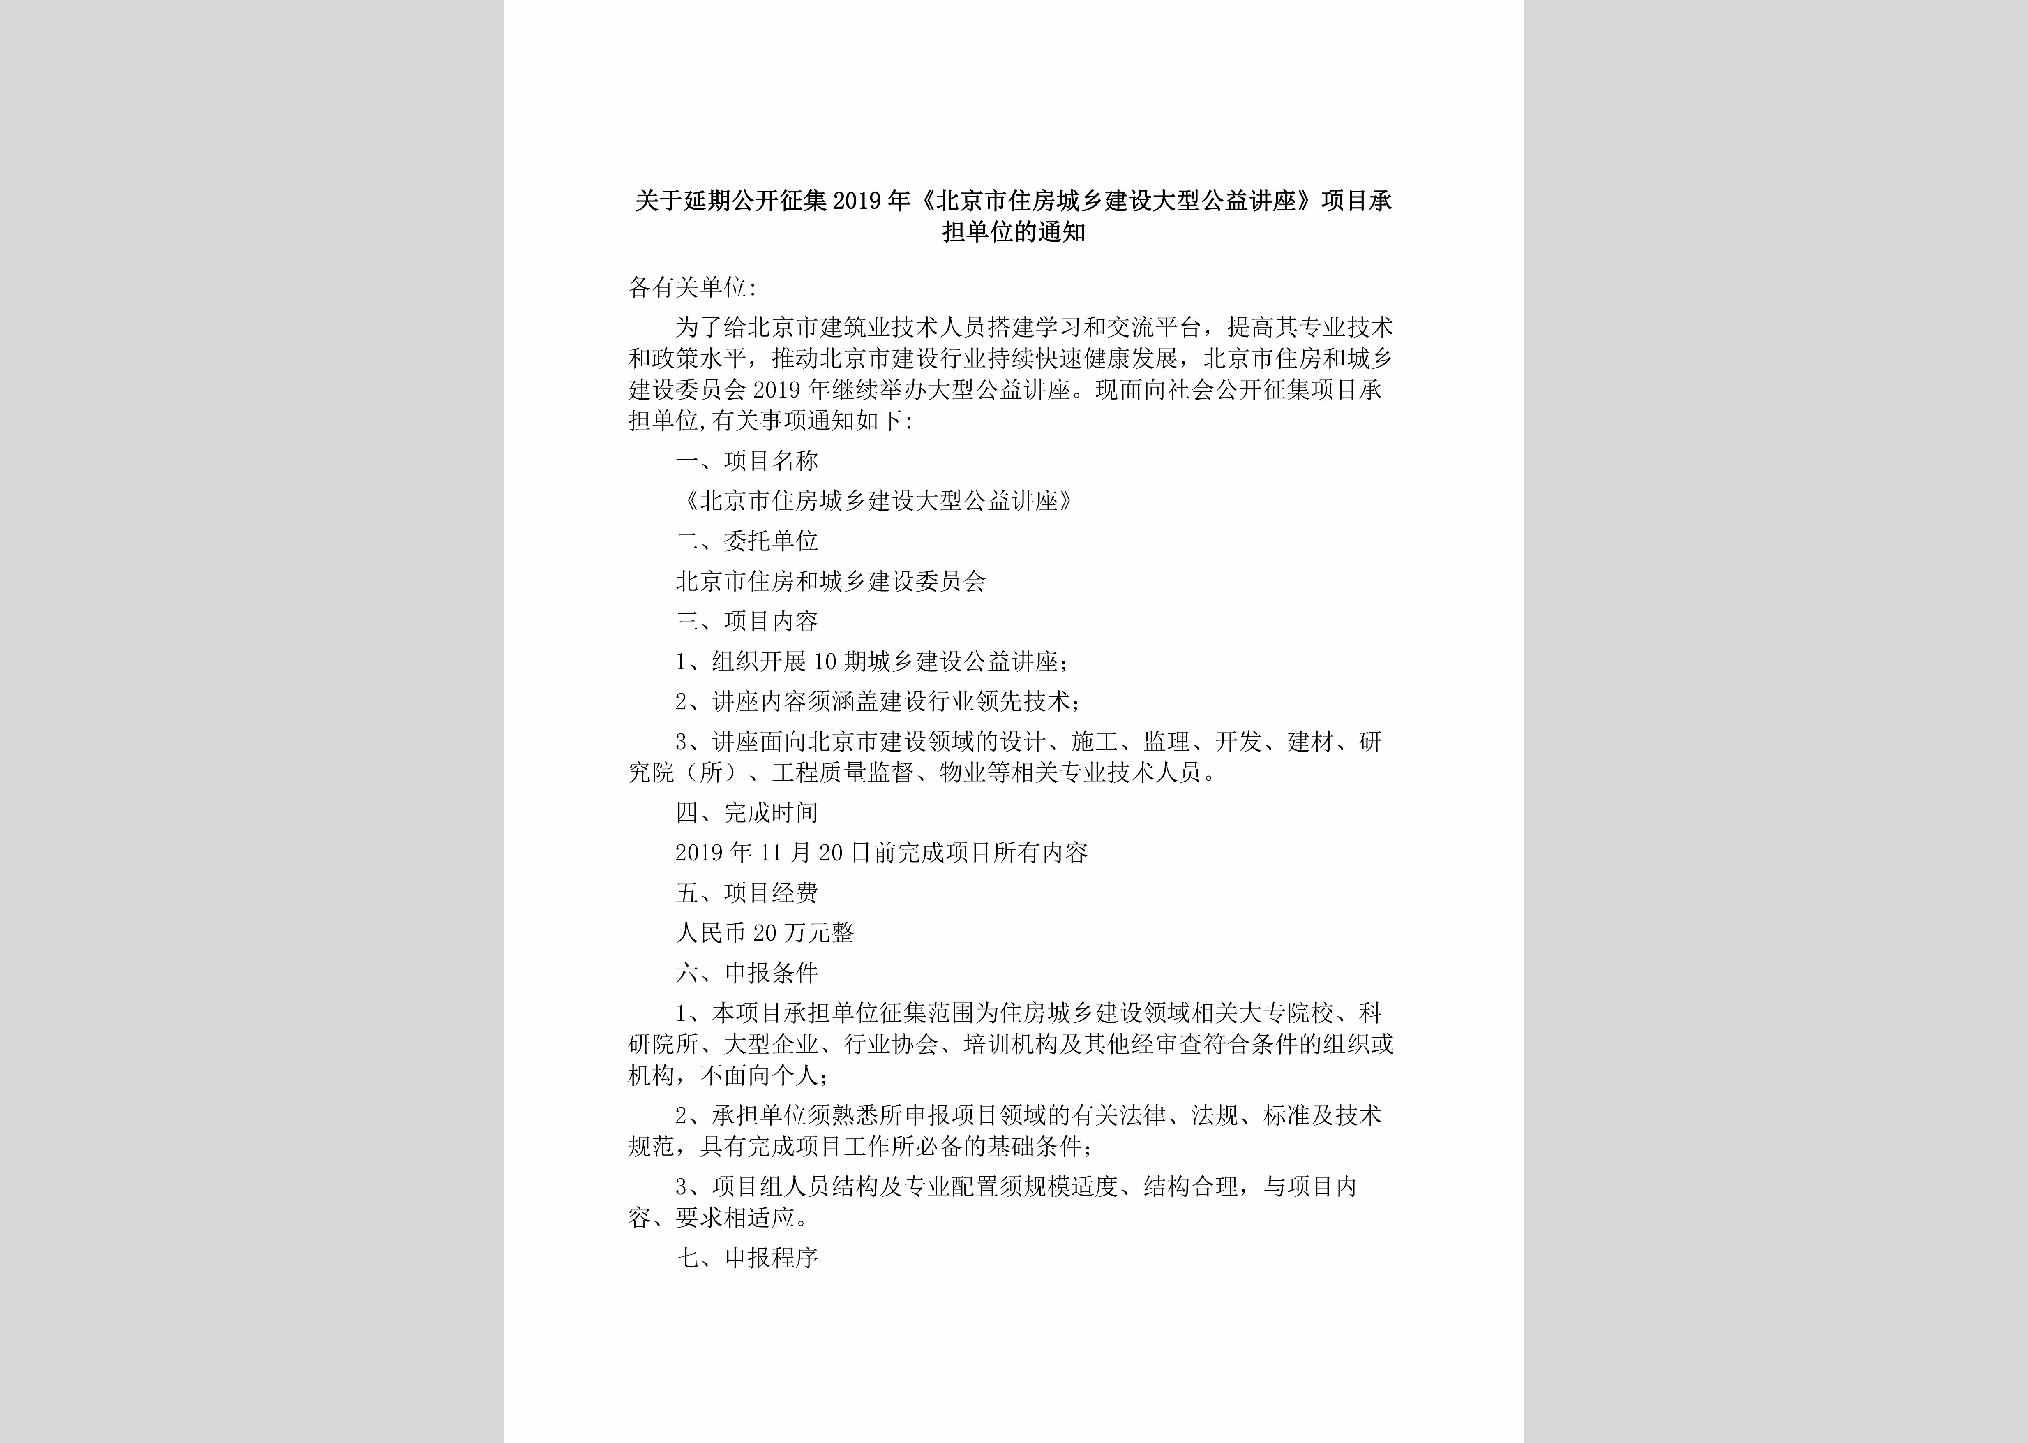 BJ-XMCDDWTZ-2019：关于延期公开征集2019年《北京市住房城乡建设大型公益讲座》项目承担单位的通知